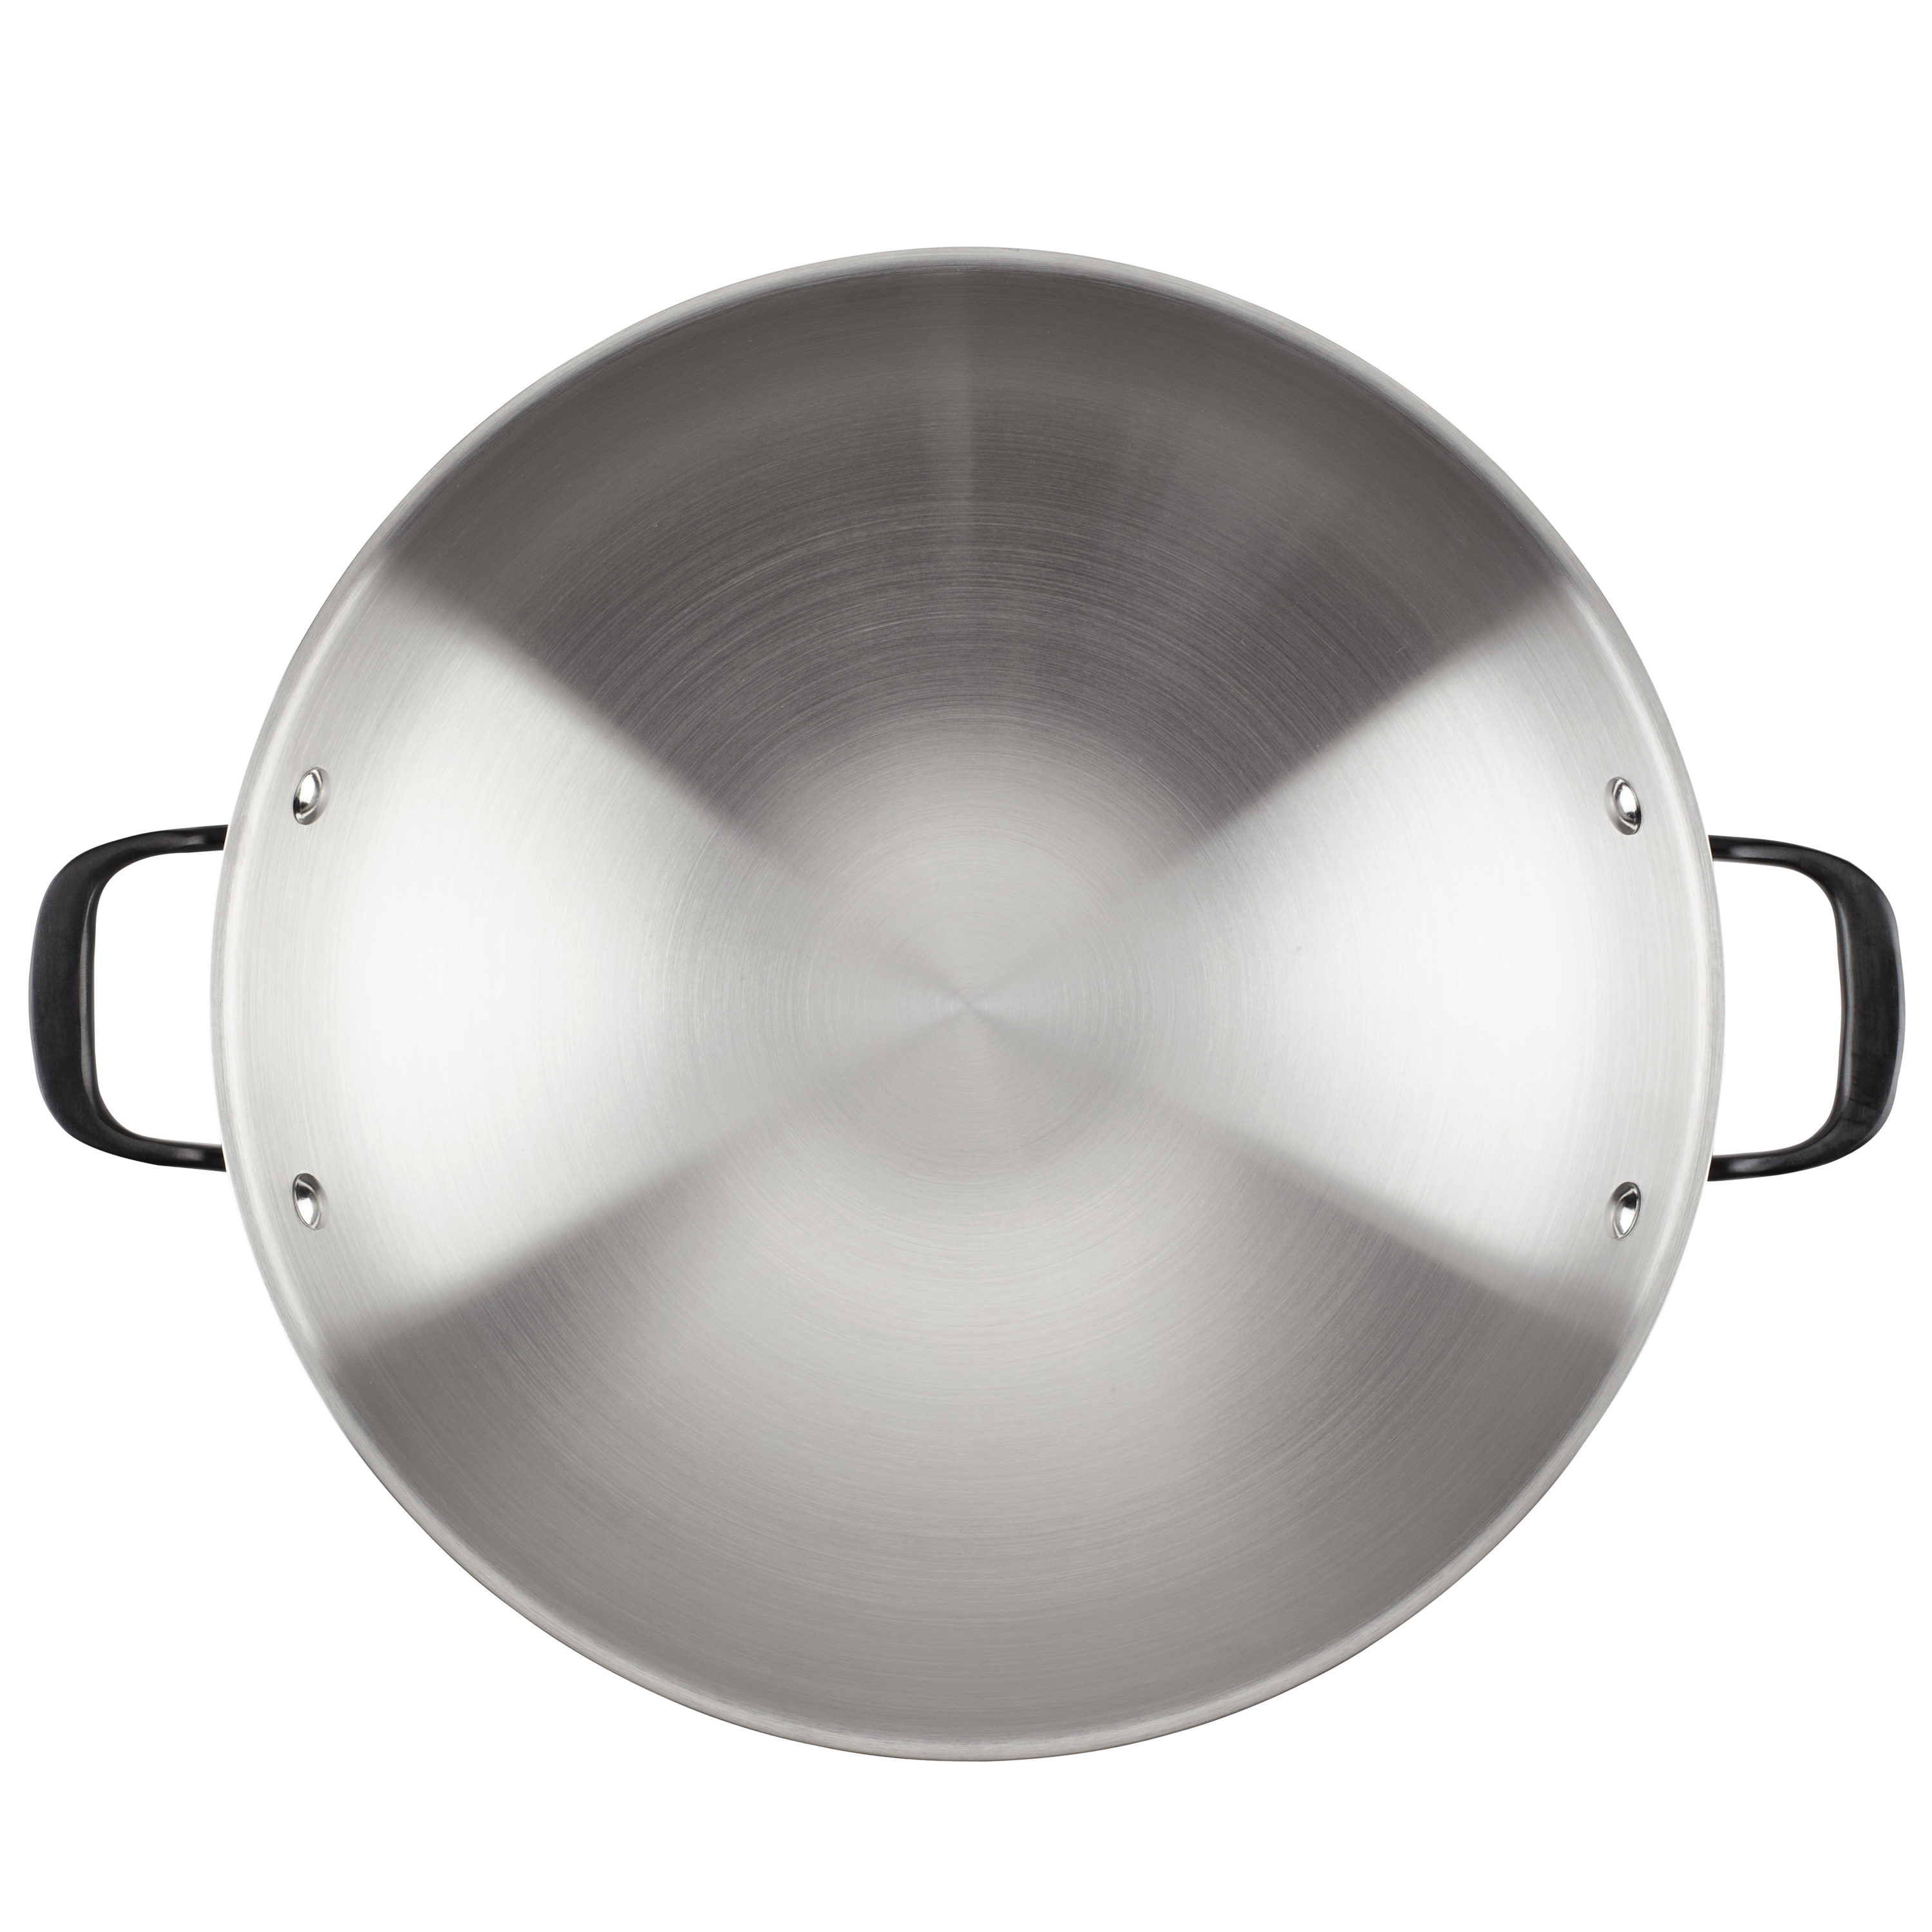 Commercial Aluminum Cookware 5005 5 Qt Sauté Pan Skillet Pot w